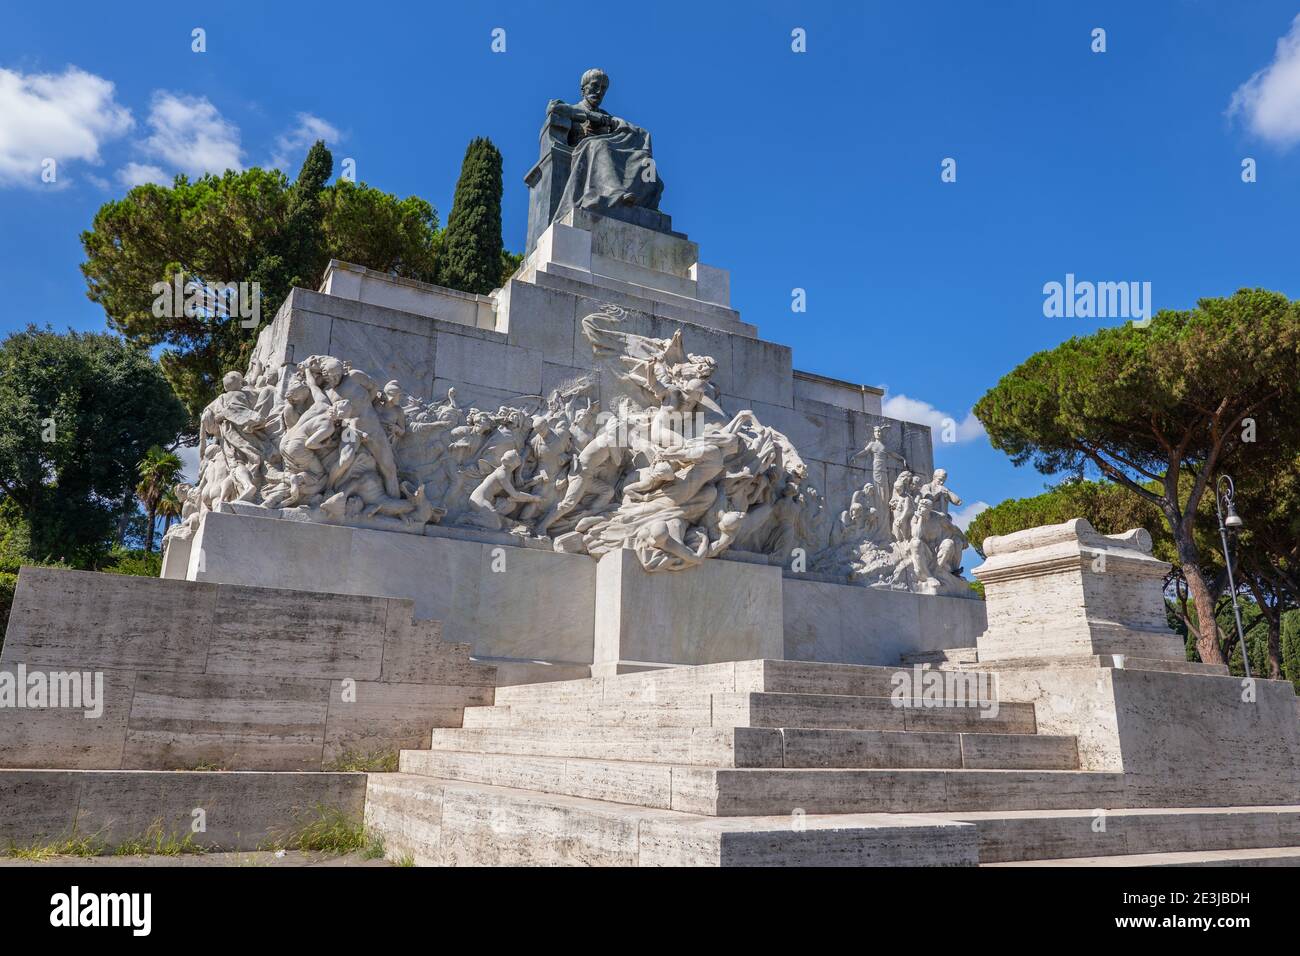 Monument to Giuseppe Mazzini by Ettore Ferrari at Piazza Ugo La Malfa in Rome, Italy Stock Photo